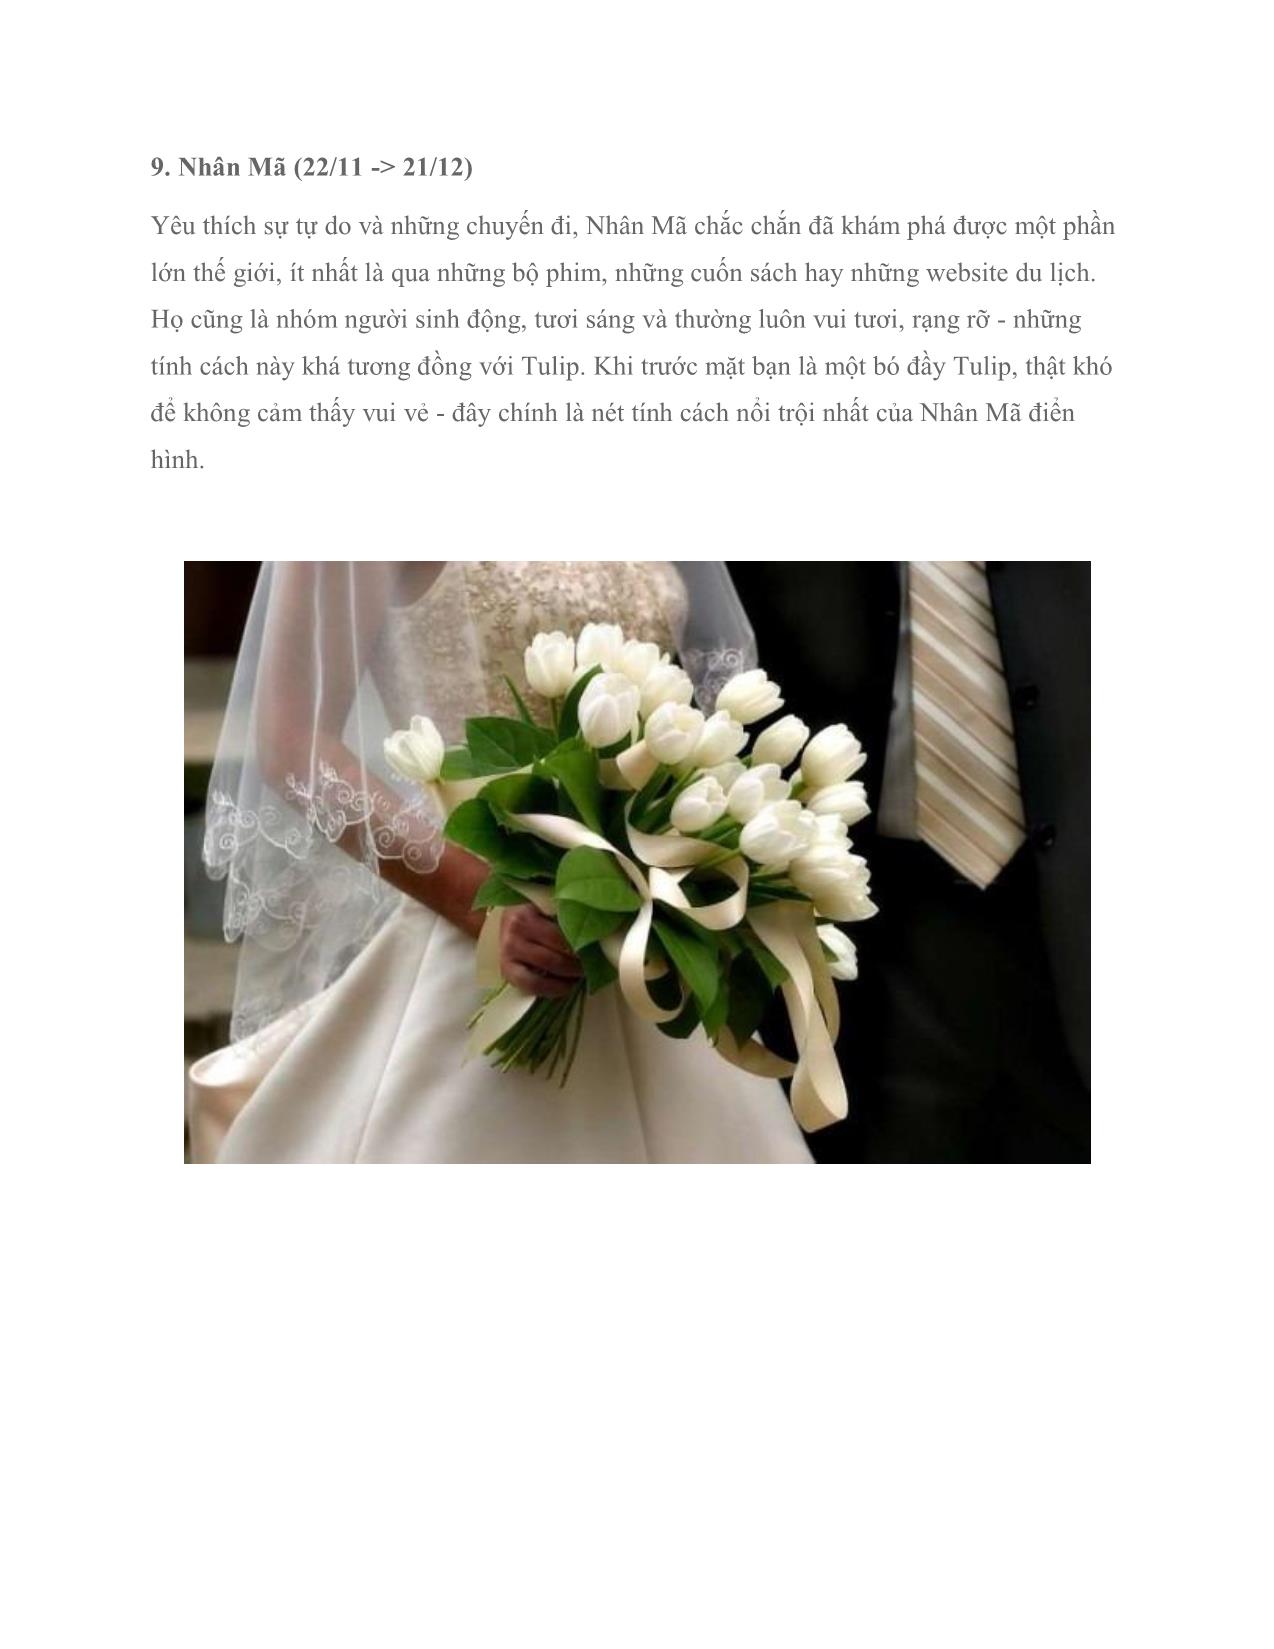 Chọn hoa cưới theo cung hoàng đạo (tiếp) trang 3